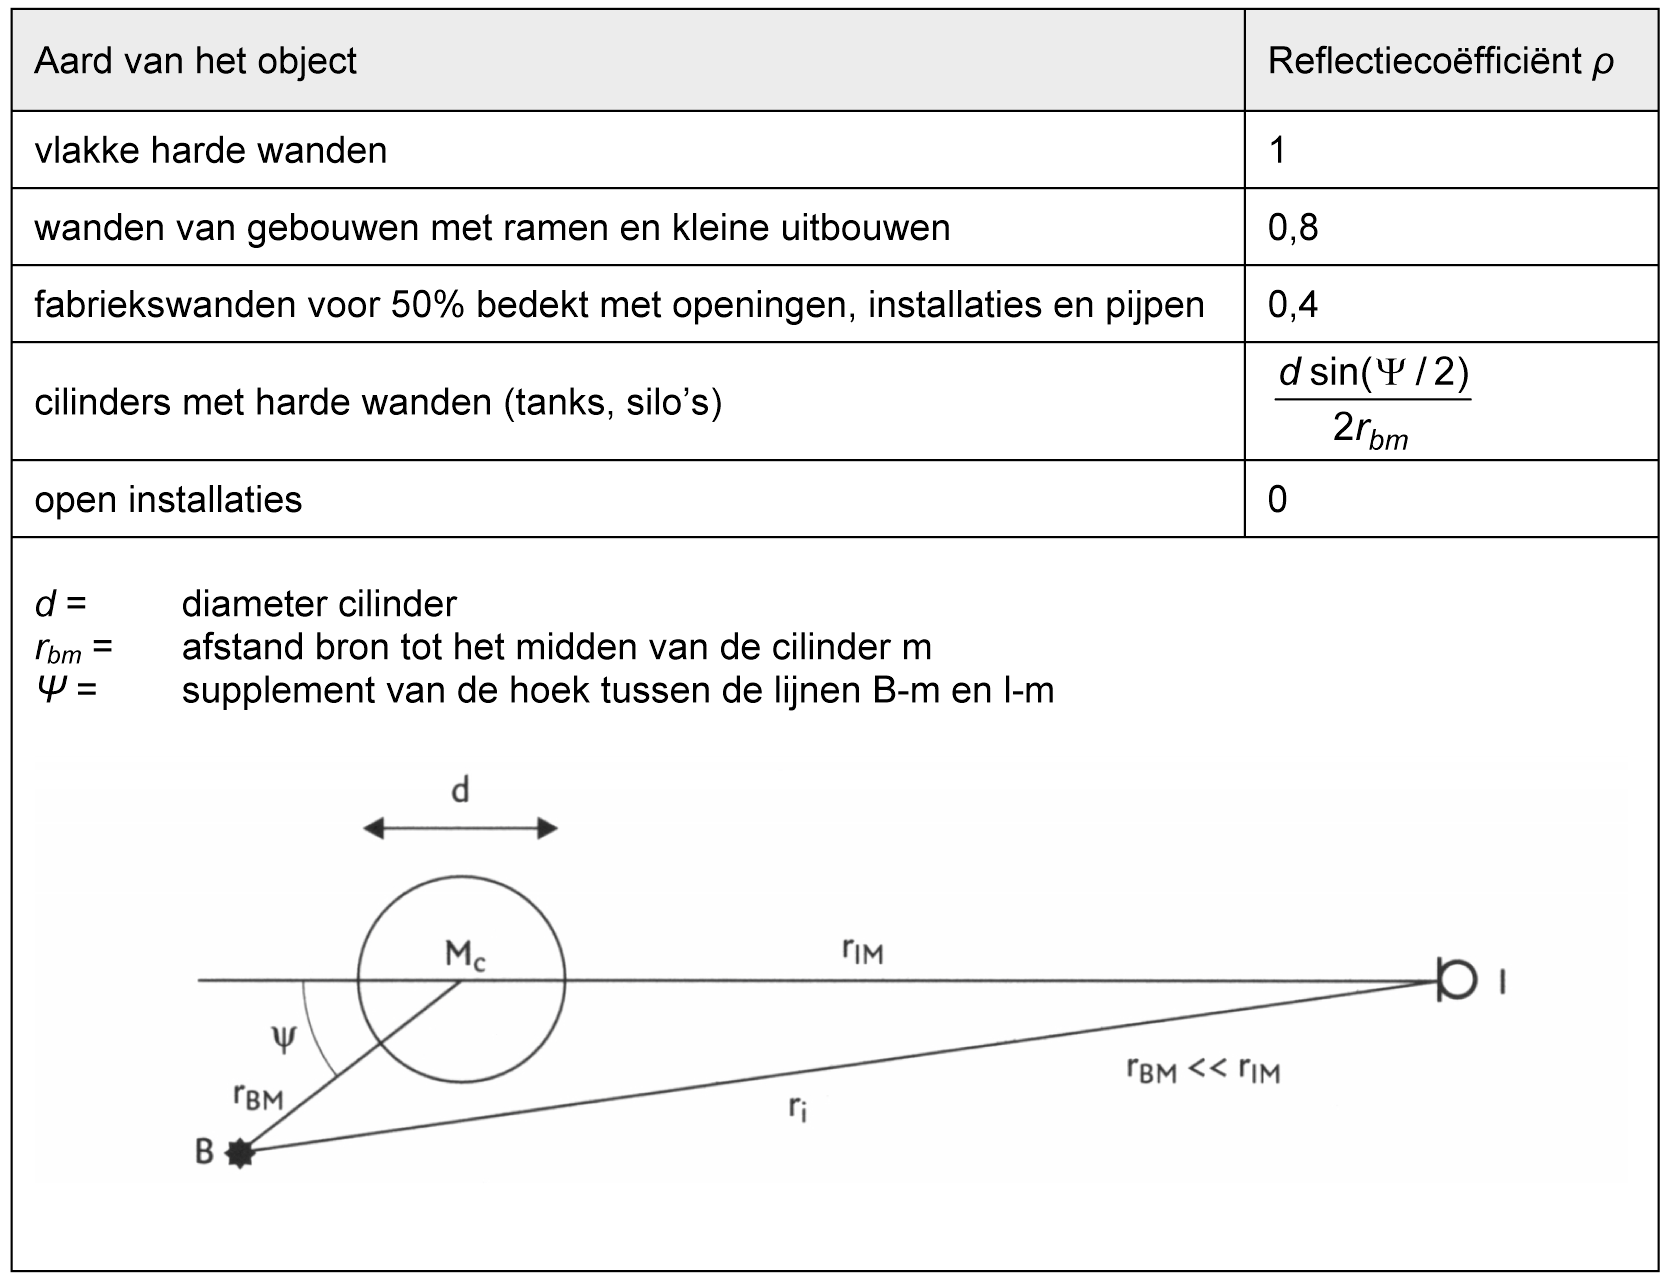 tabel
3.2 Waarden voor de reflectiecoëfficiënt ρ